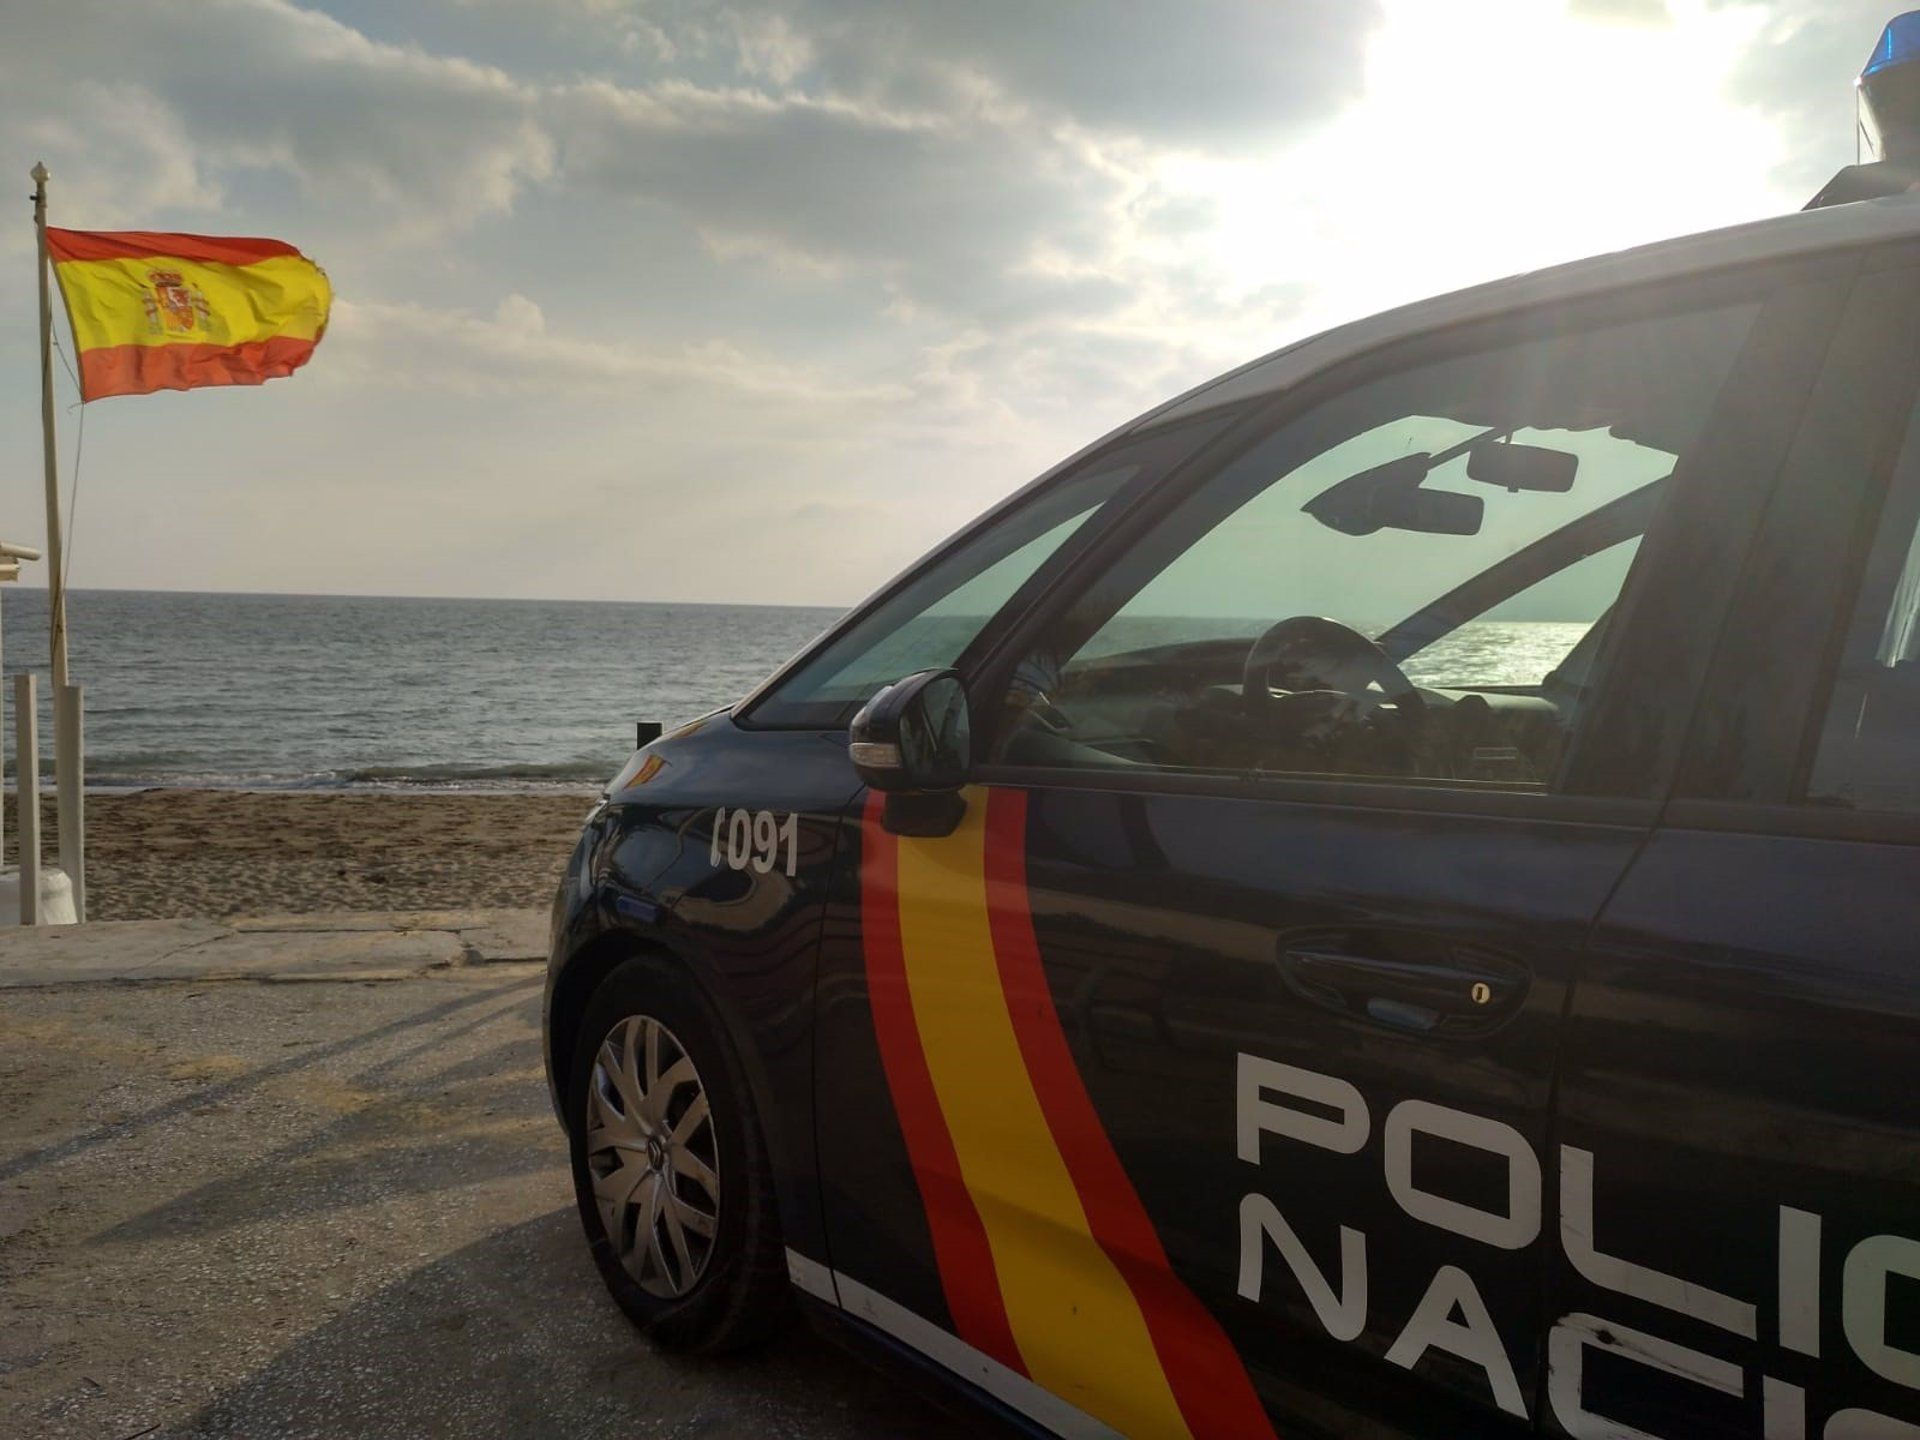 Ebrio y con una catana en el maletero: así conducía un hombre con orden para entrar en prisión por Málaga